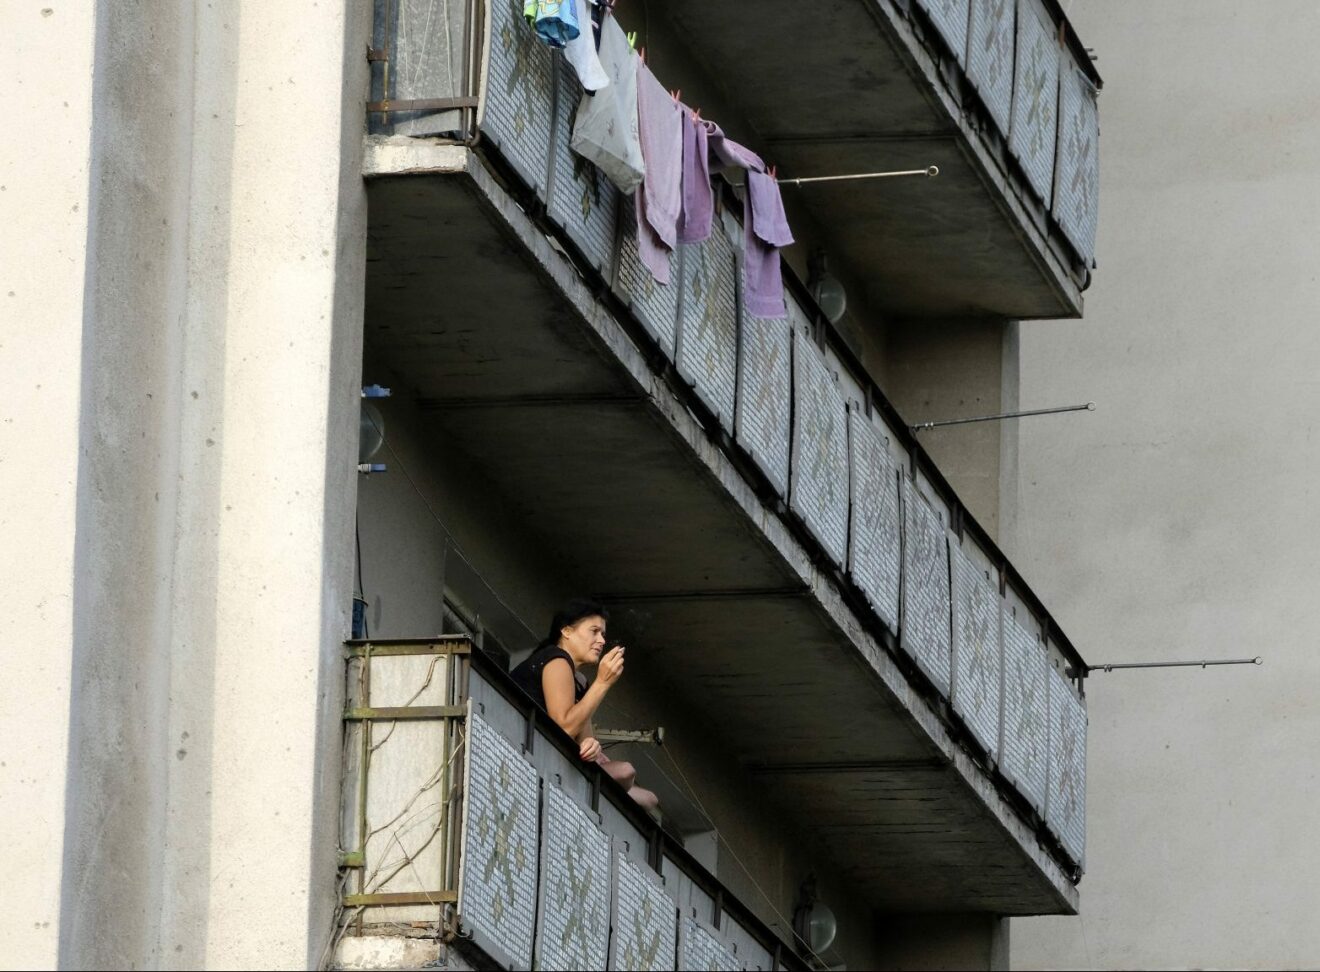 ‘Vrući’ susjedi izluđuju Zagrepčanku: ‘Krenem na balkon staviti deku kad imam šta i vidjeti’